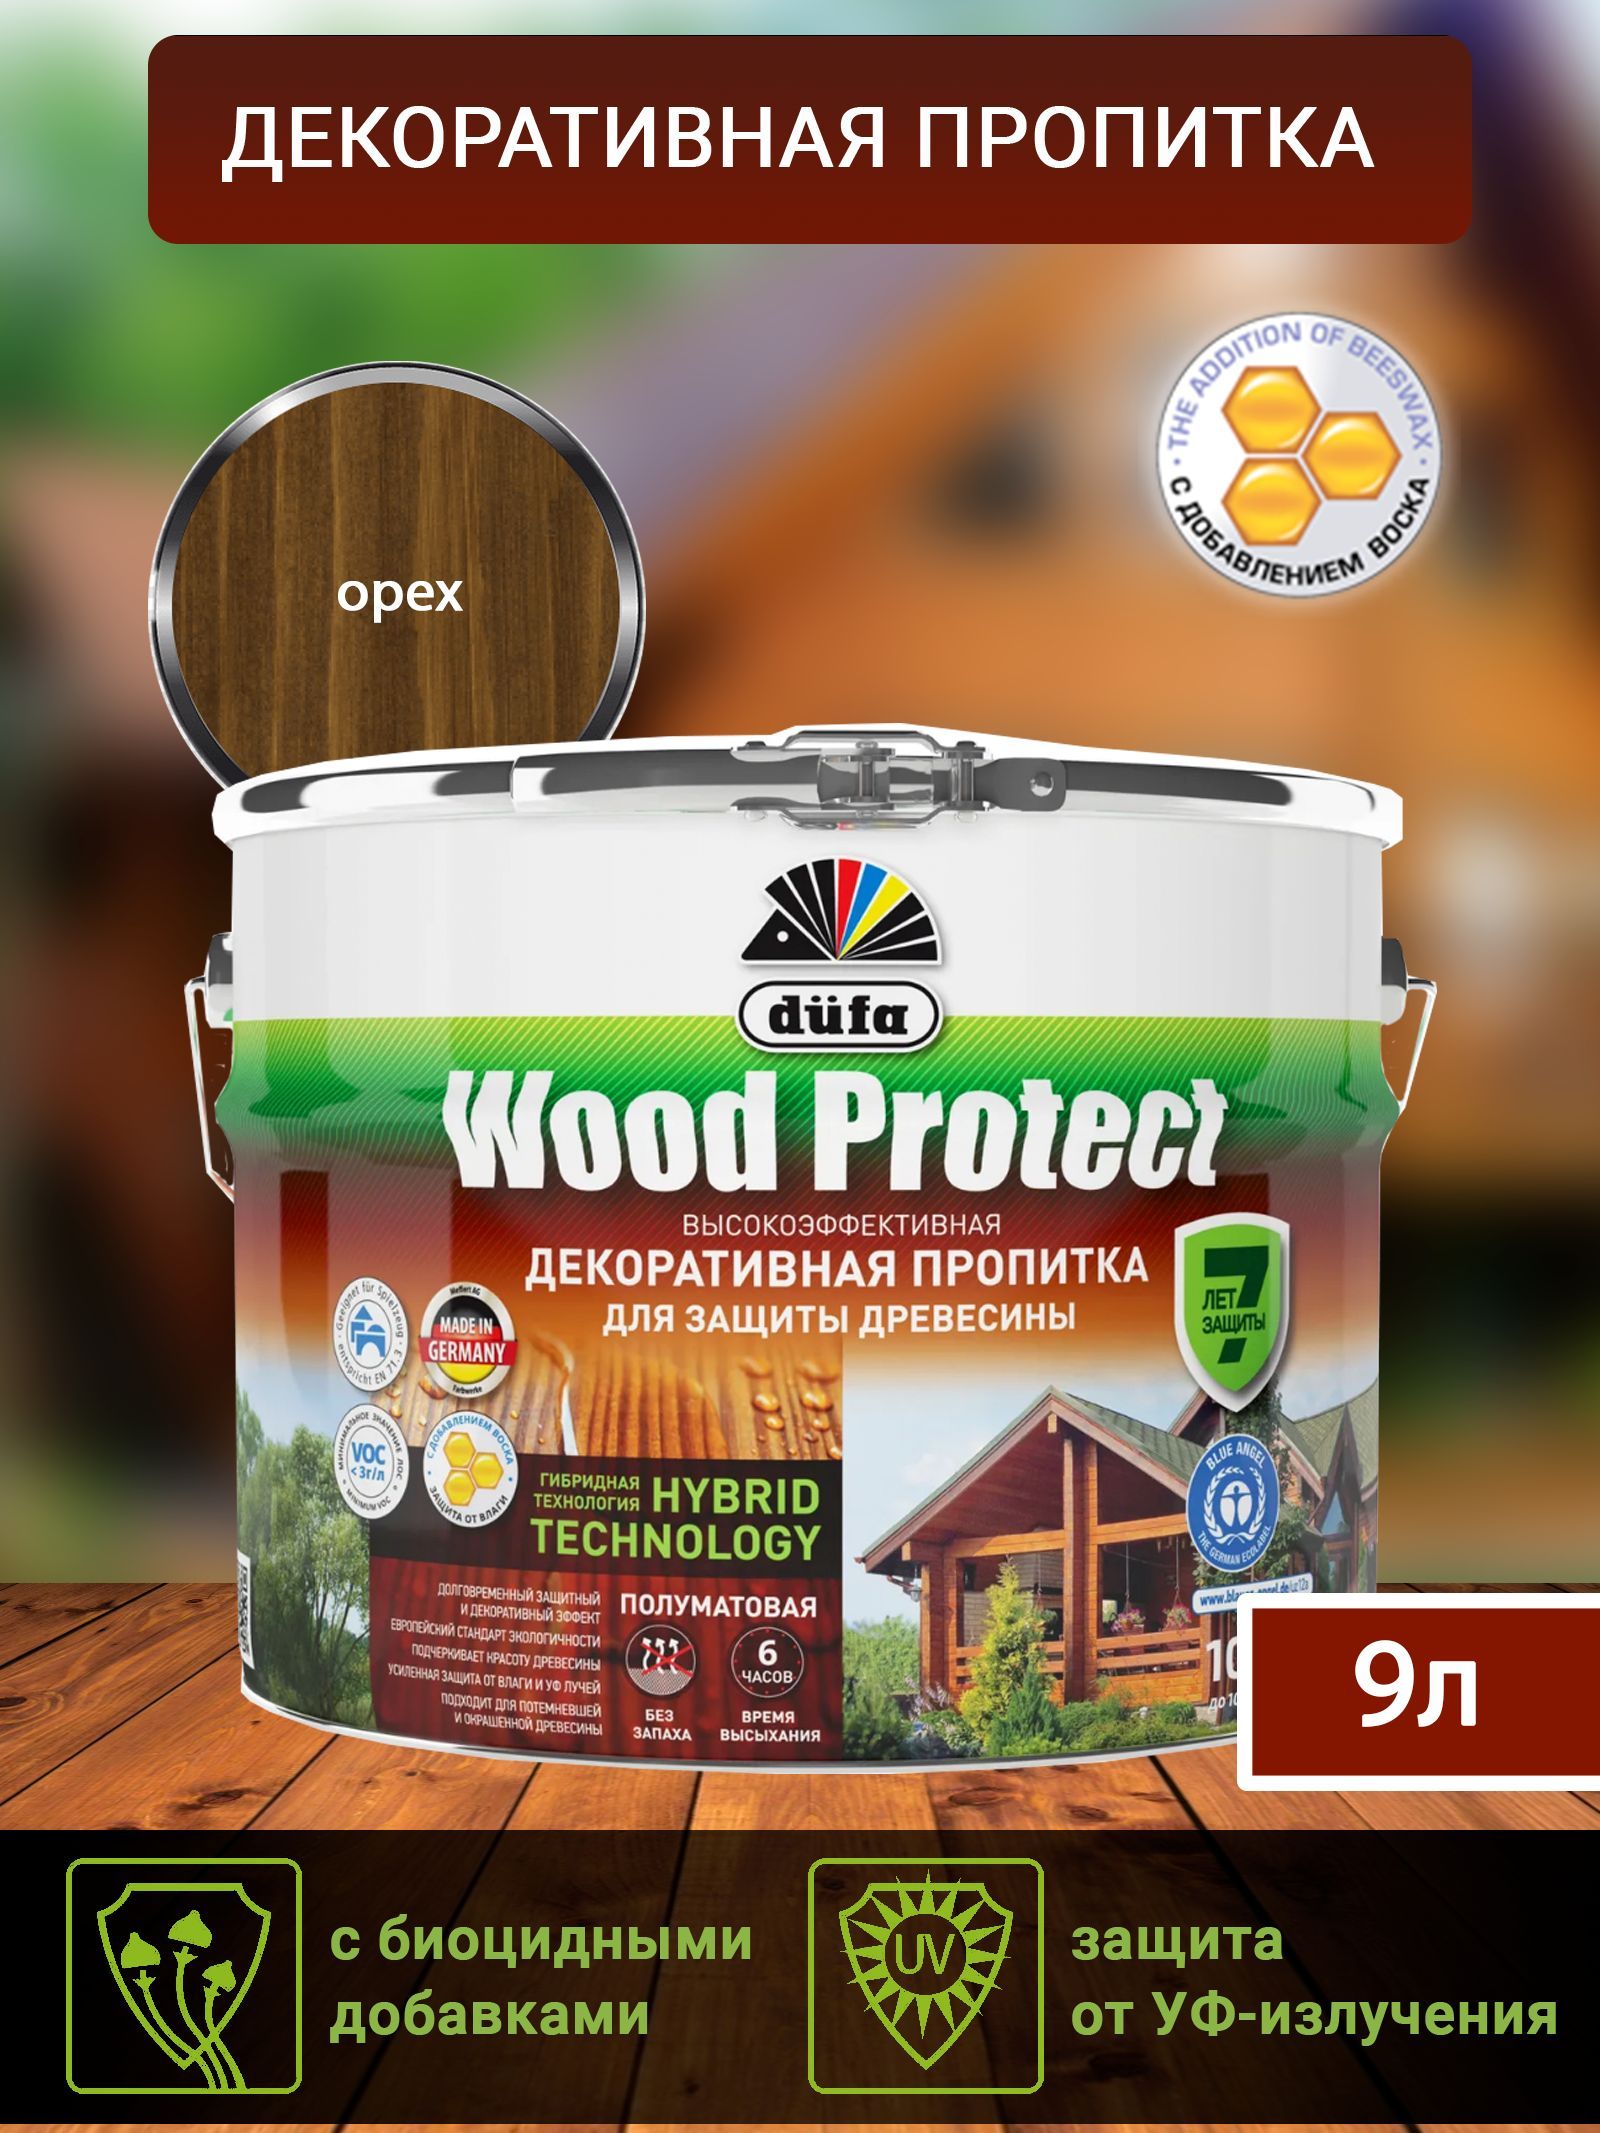 Dufa Пропитка “Wood Protect” для защиты древесины; орех 9 л, шт